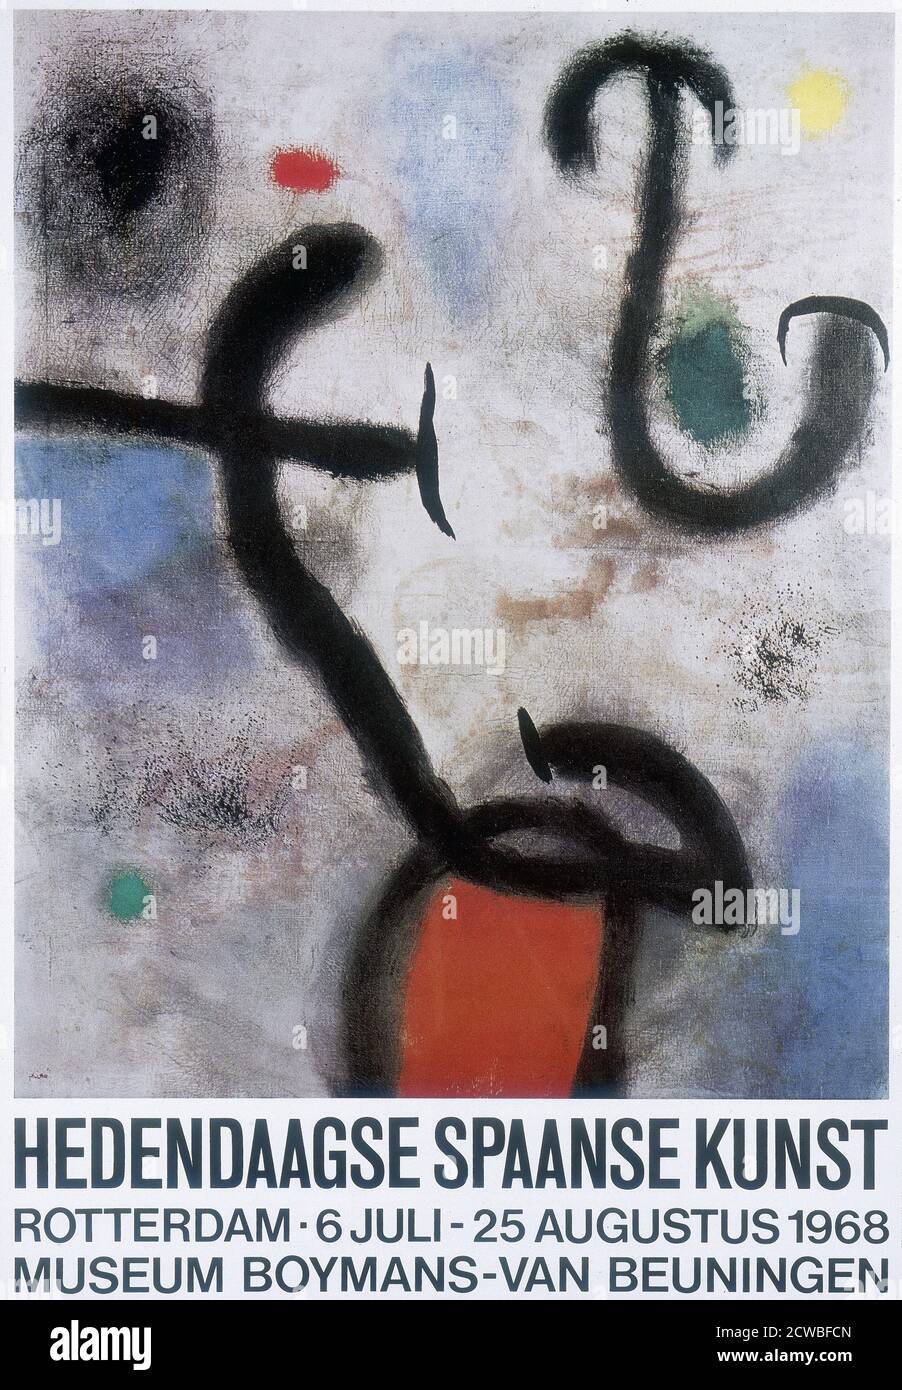 Plakat für eine spanische Kunstausstellung in Rotterdam 1968. Lithographie im surrealistischen Stil des spanischen Künstlers Joan Miro.(1893 - 1983) Maler, Bildhauer und Keramiker, geboren in Barcelona. Stockfoto